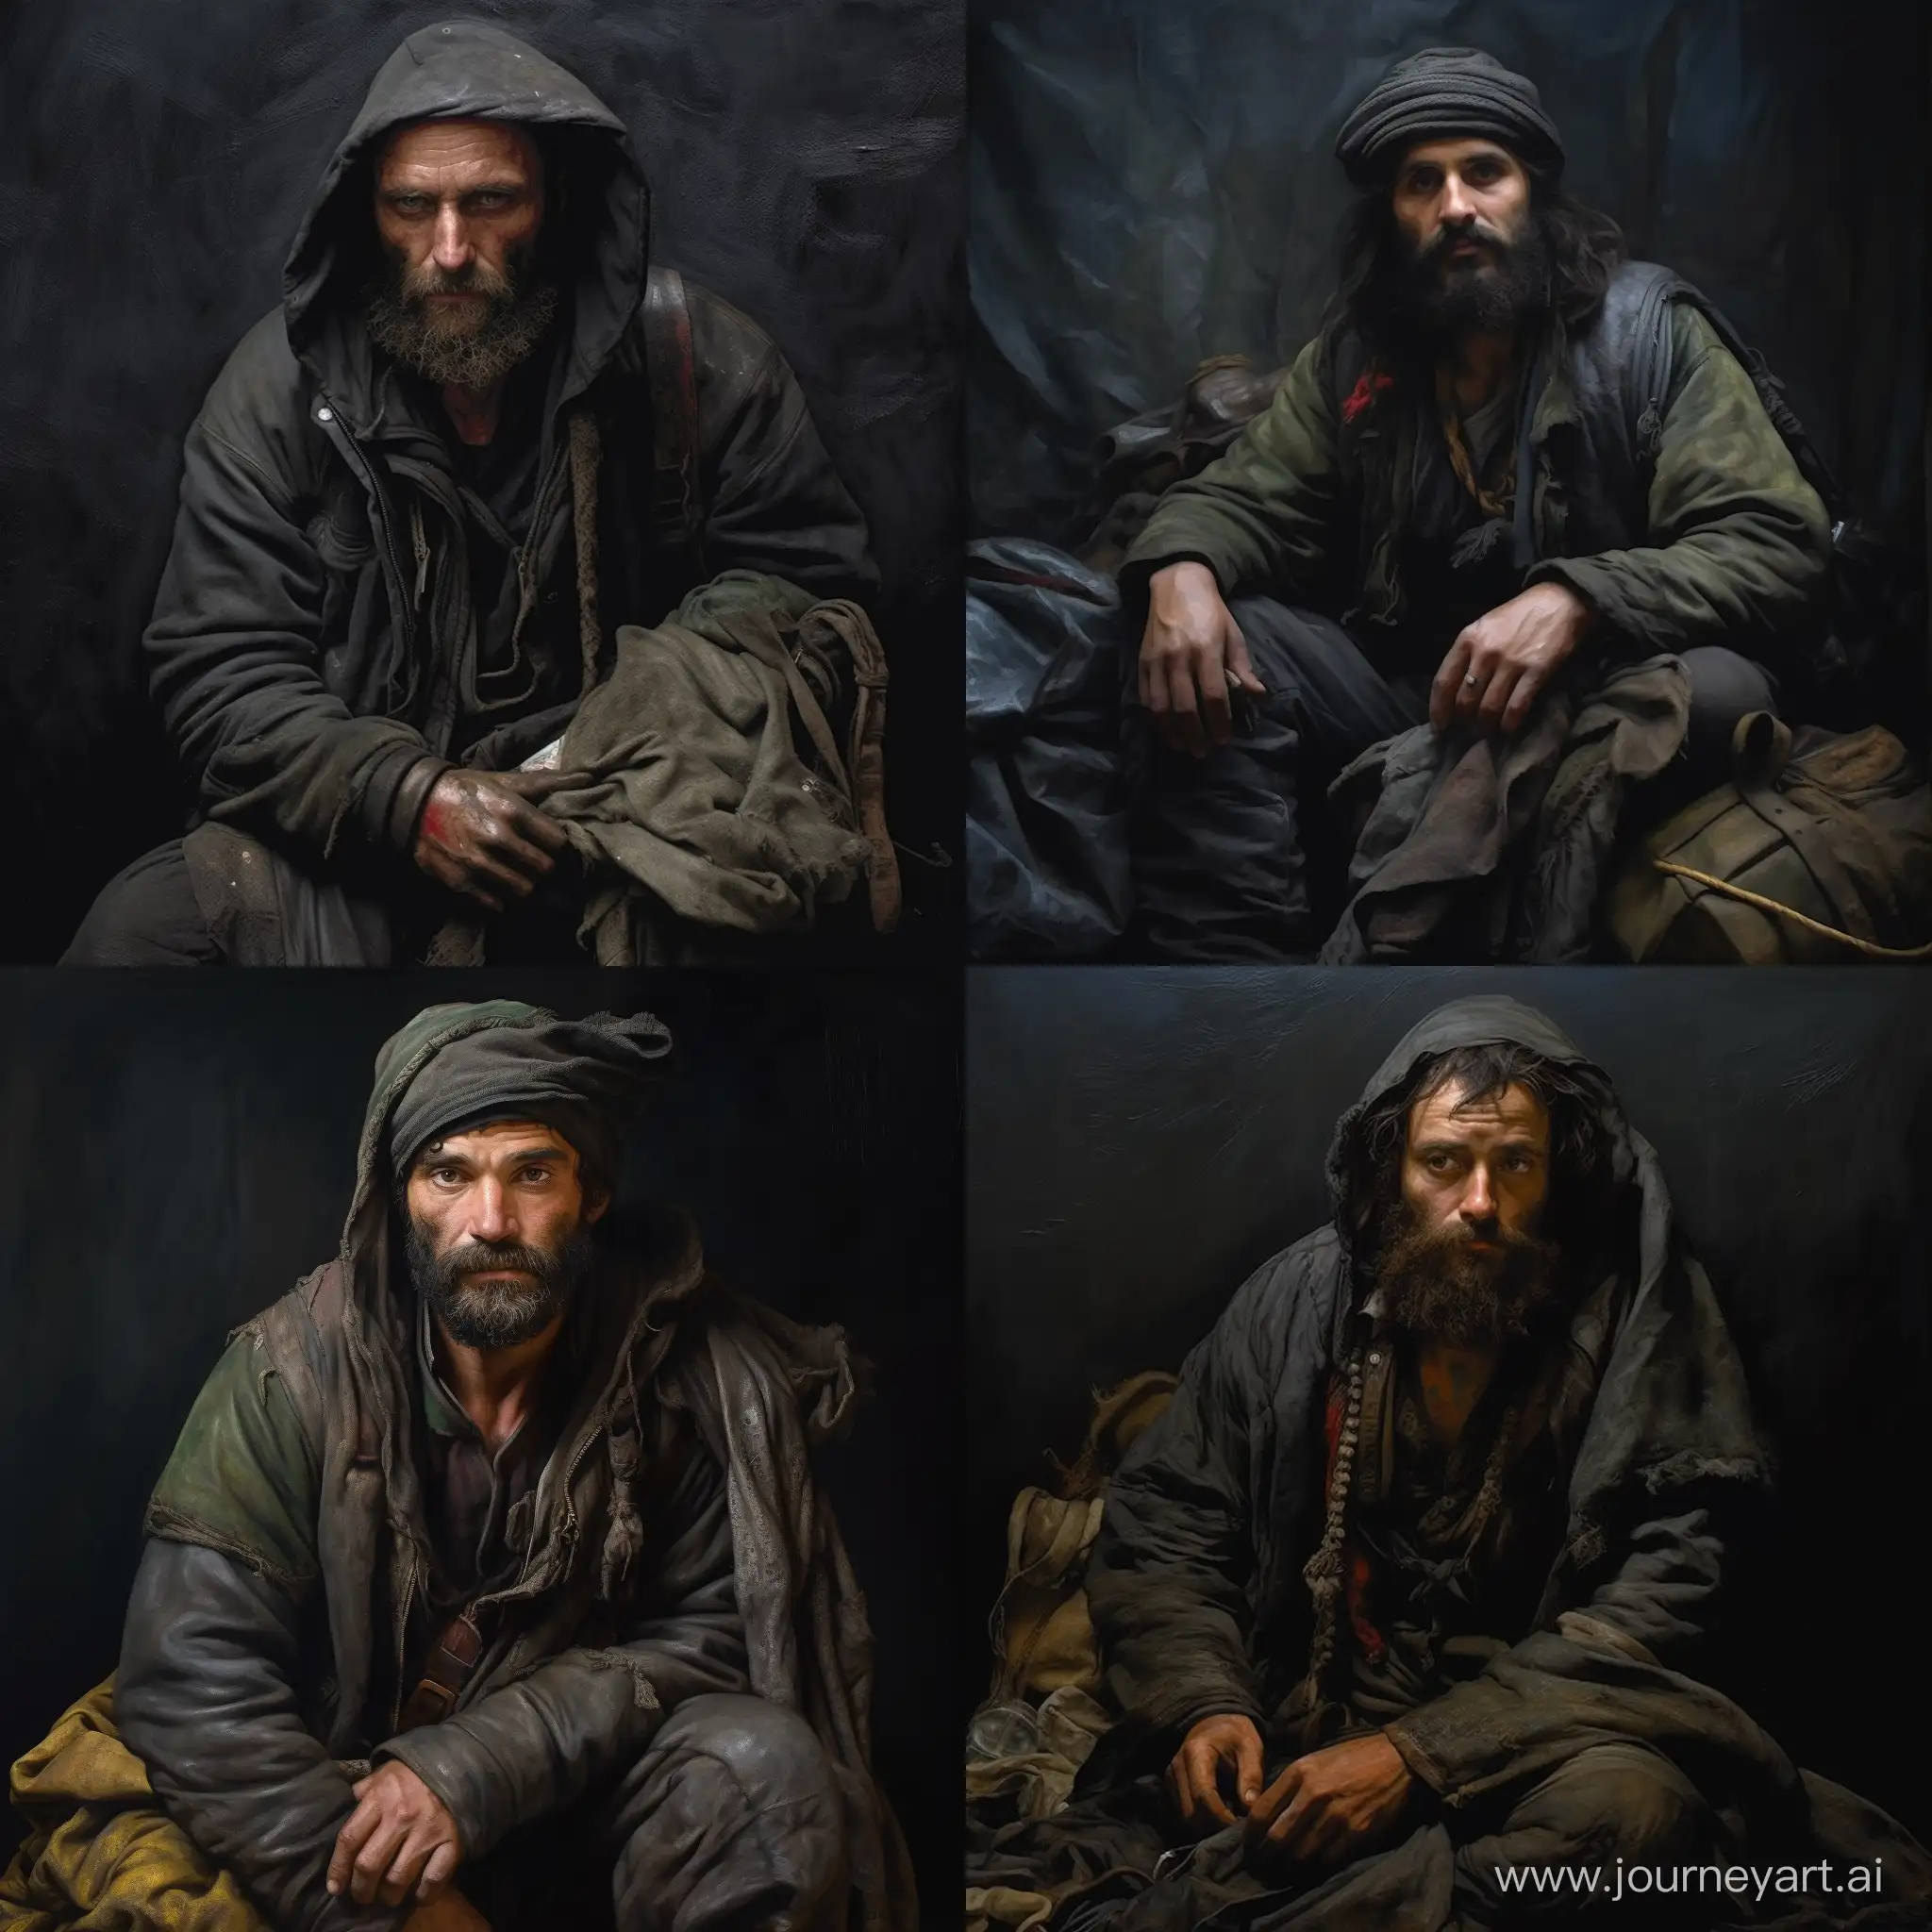 alone, human, hermit, unloading vest, trader, age 35, cap, jacket, dark